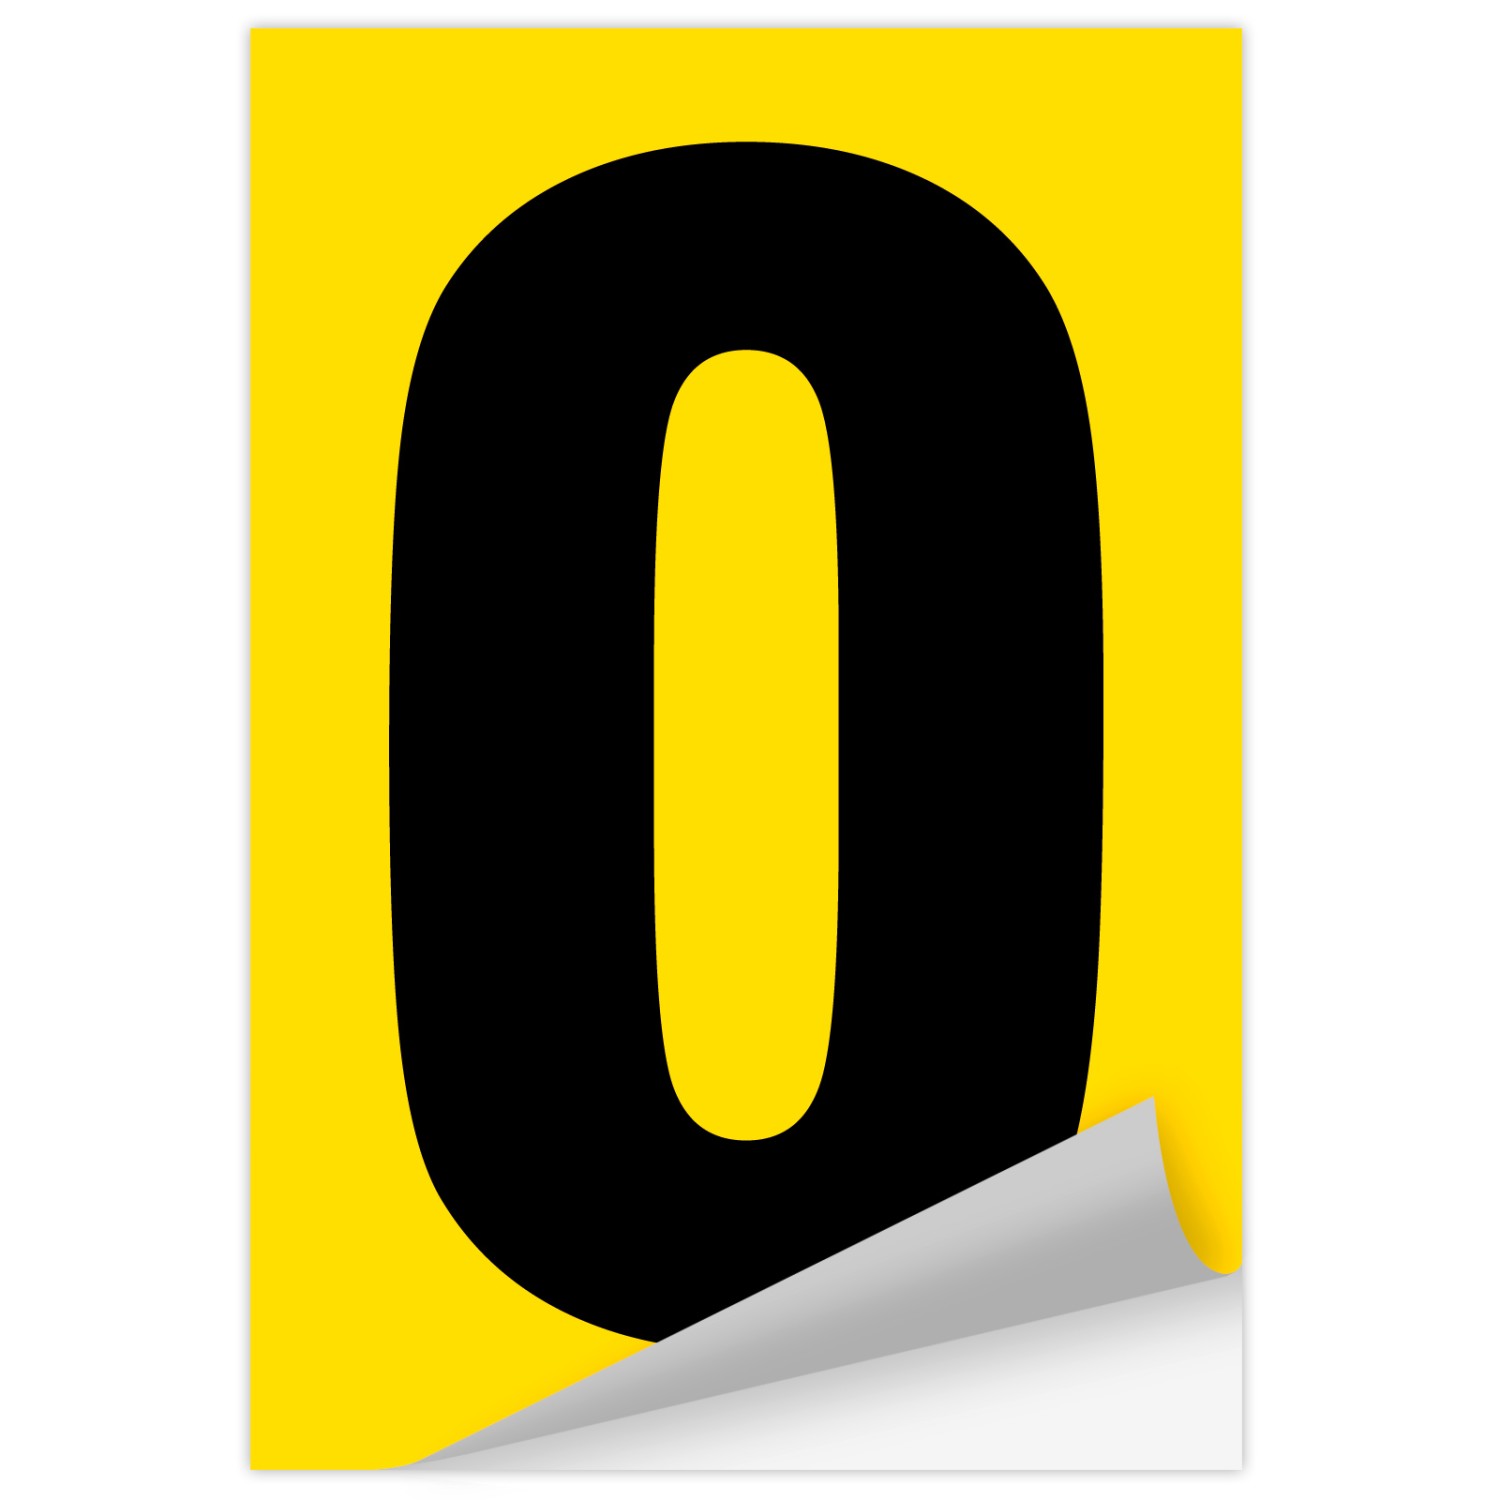 Zahlen schwarz auf gelb 80 mm hoch wetterfest als Aufkleber Klebezahlen Regalbeschriftung (Zahl: 0)